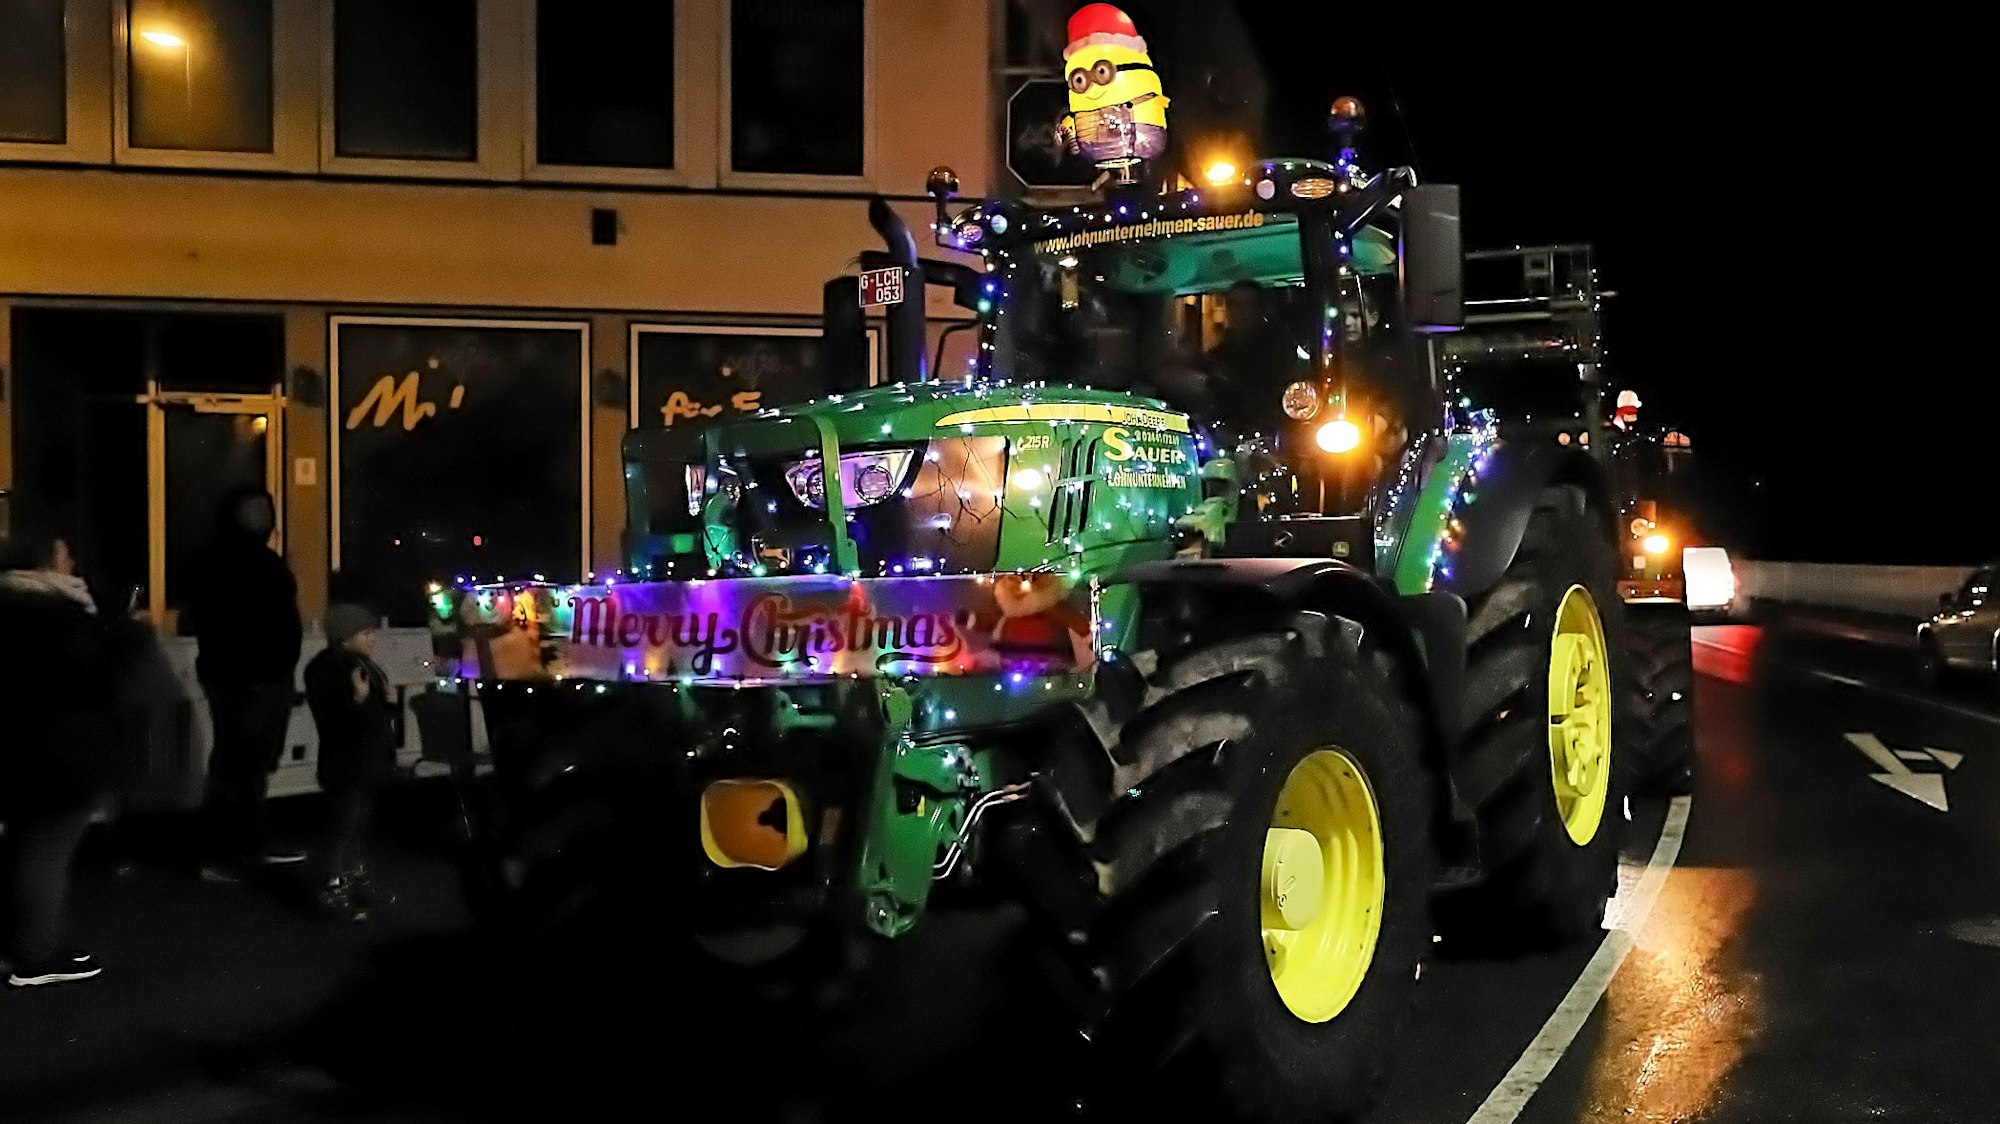 Das Bild zeigt einen geschmückten Traktor während des Lichterzugs.